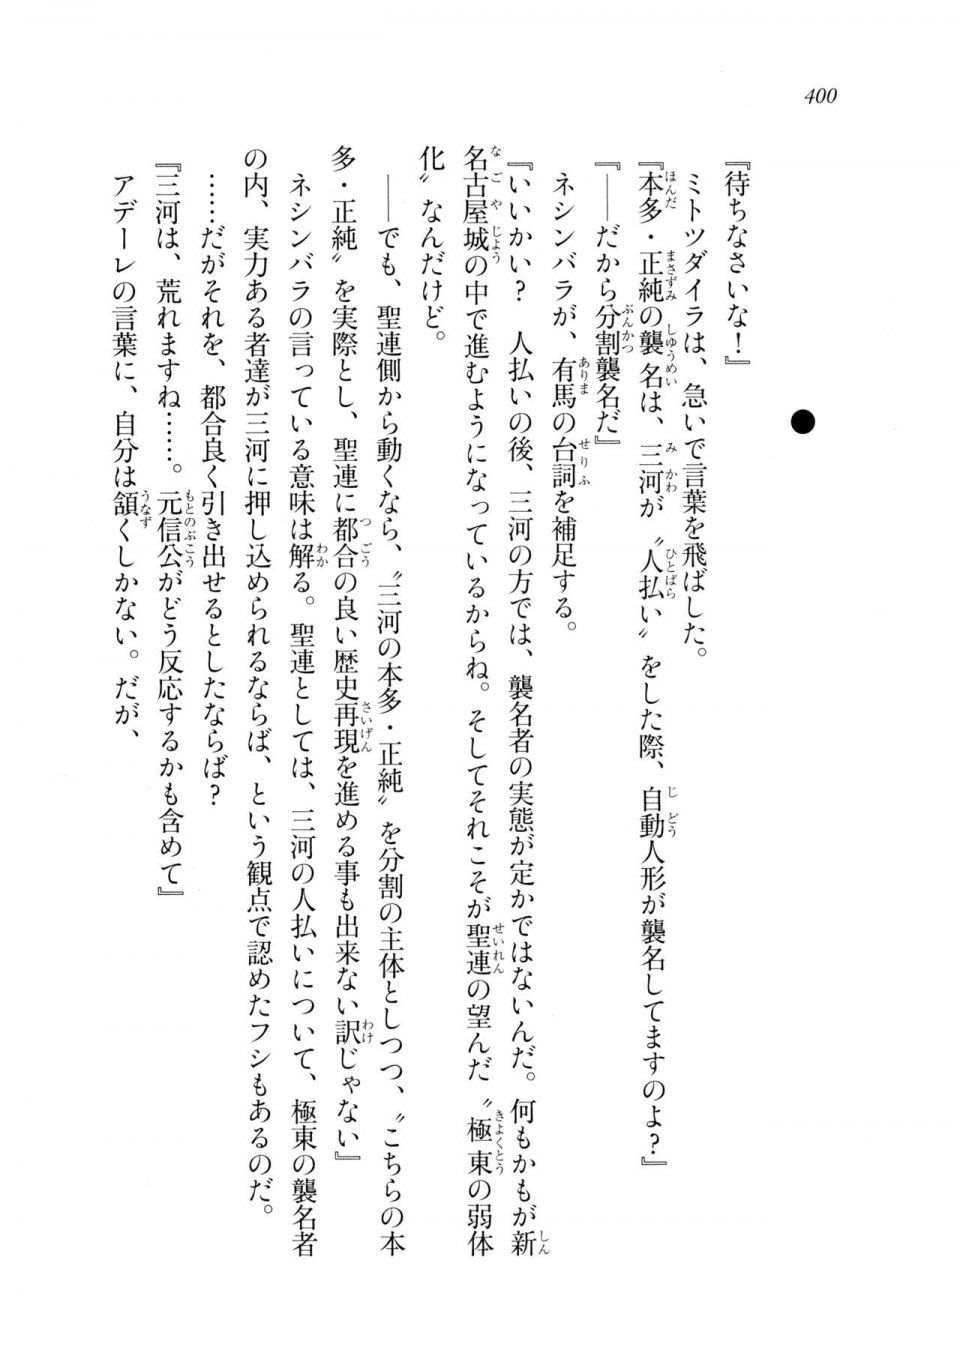 Kyoukai Senjou no Horizon LN Sidestory Vol 2 - Photo #398